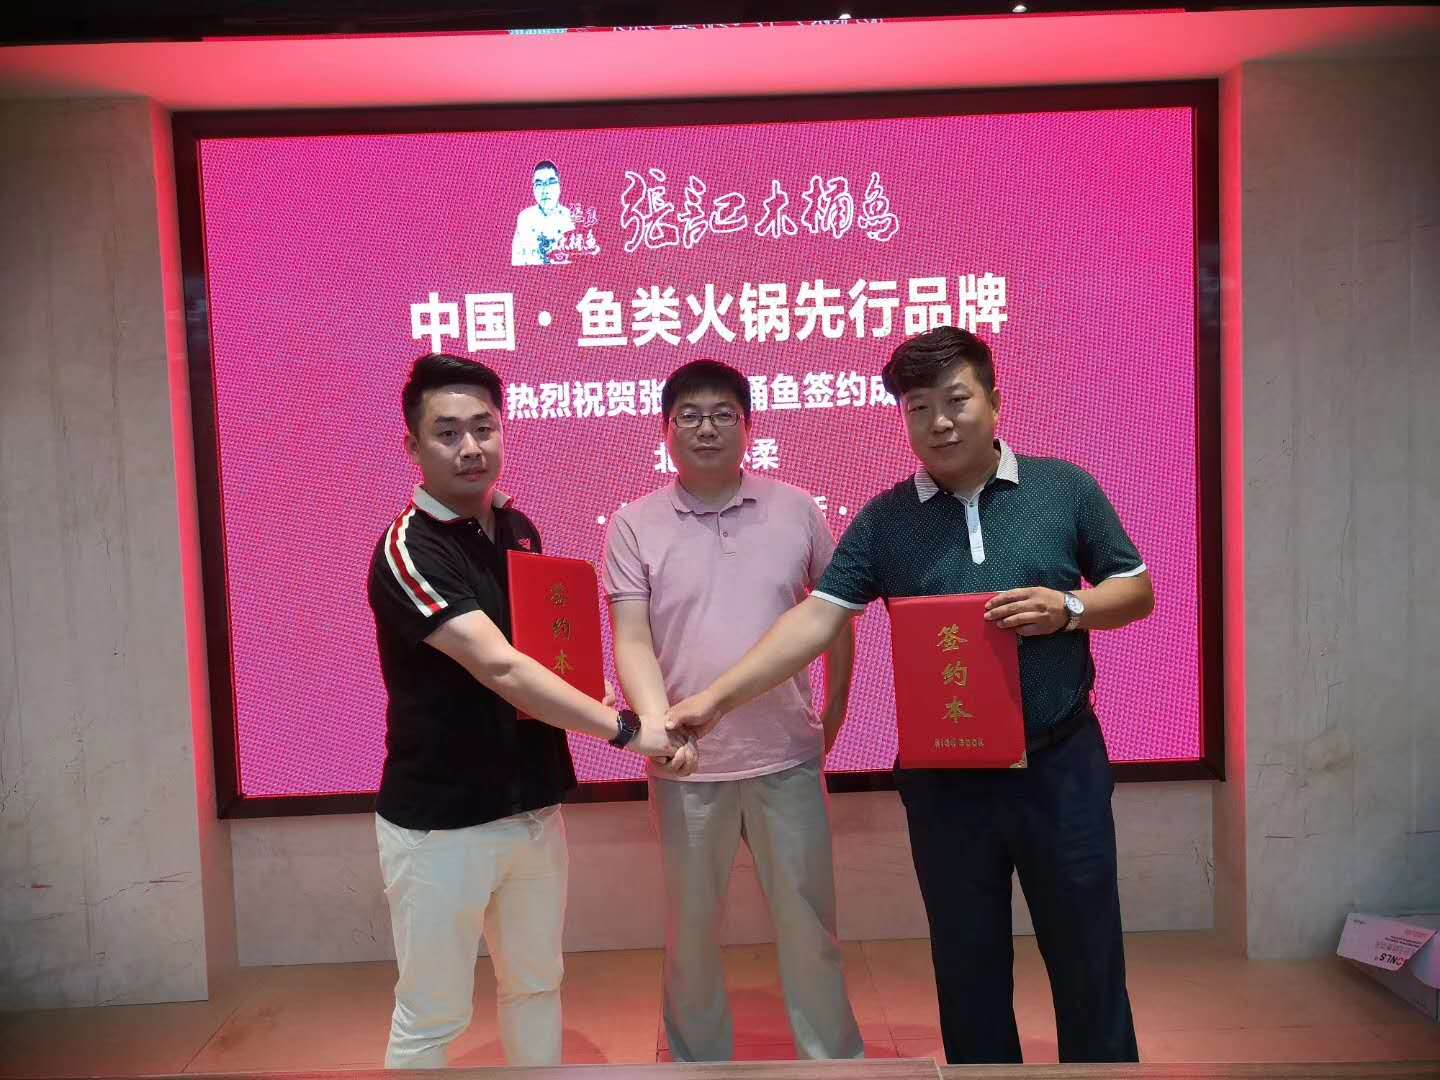 张记木桶鱼品牌成功入驻北京市怀柔区